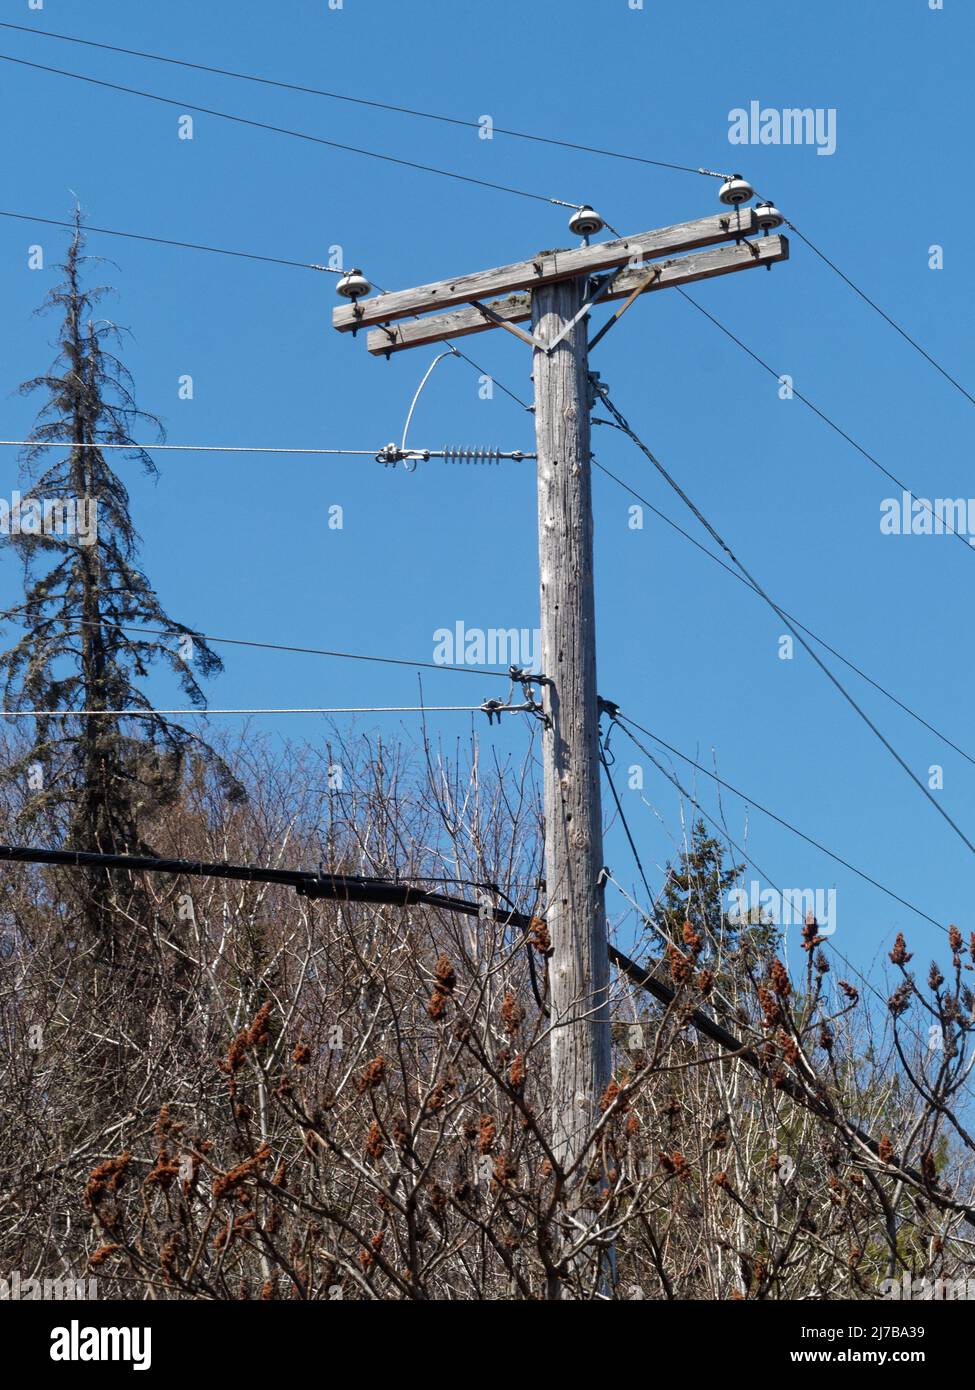 Holz-Strommast für elektrische Drähte und d Kommunikationskabel. Quebec, Kanada Stockfoto